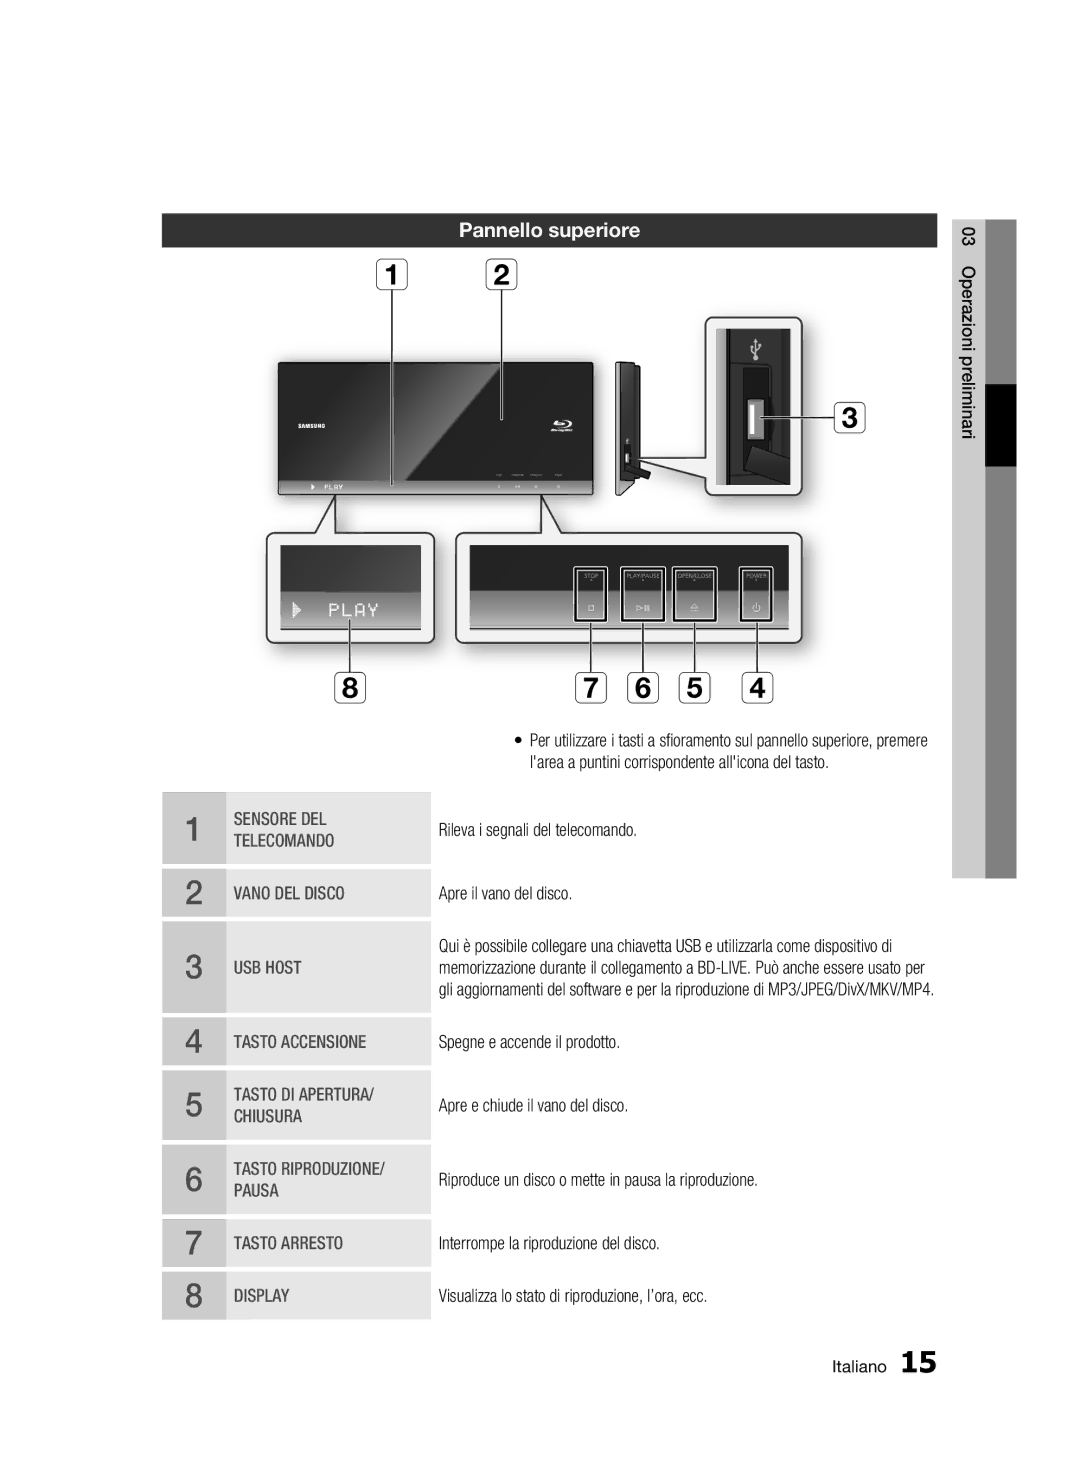 Samsung BD-C7500/EDC, BD-C7500/XEF manual F e d, Pannello superiore 